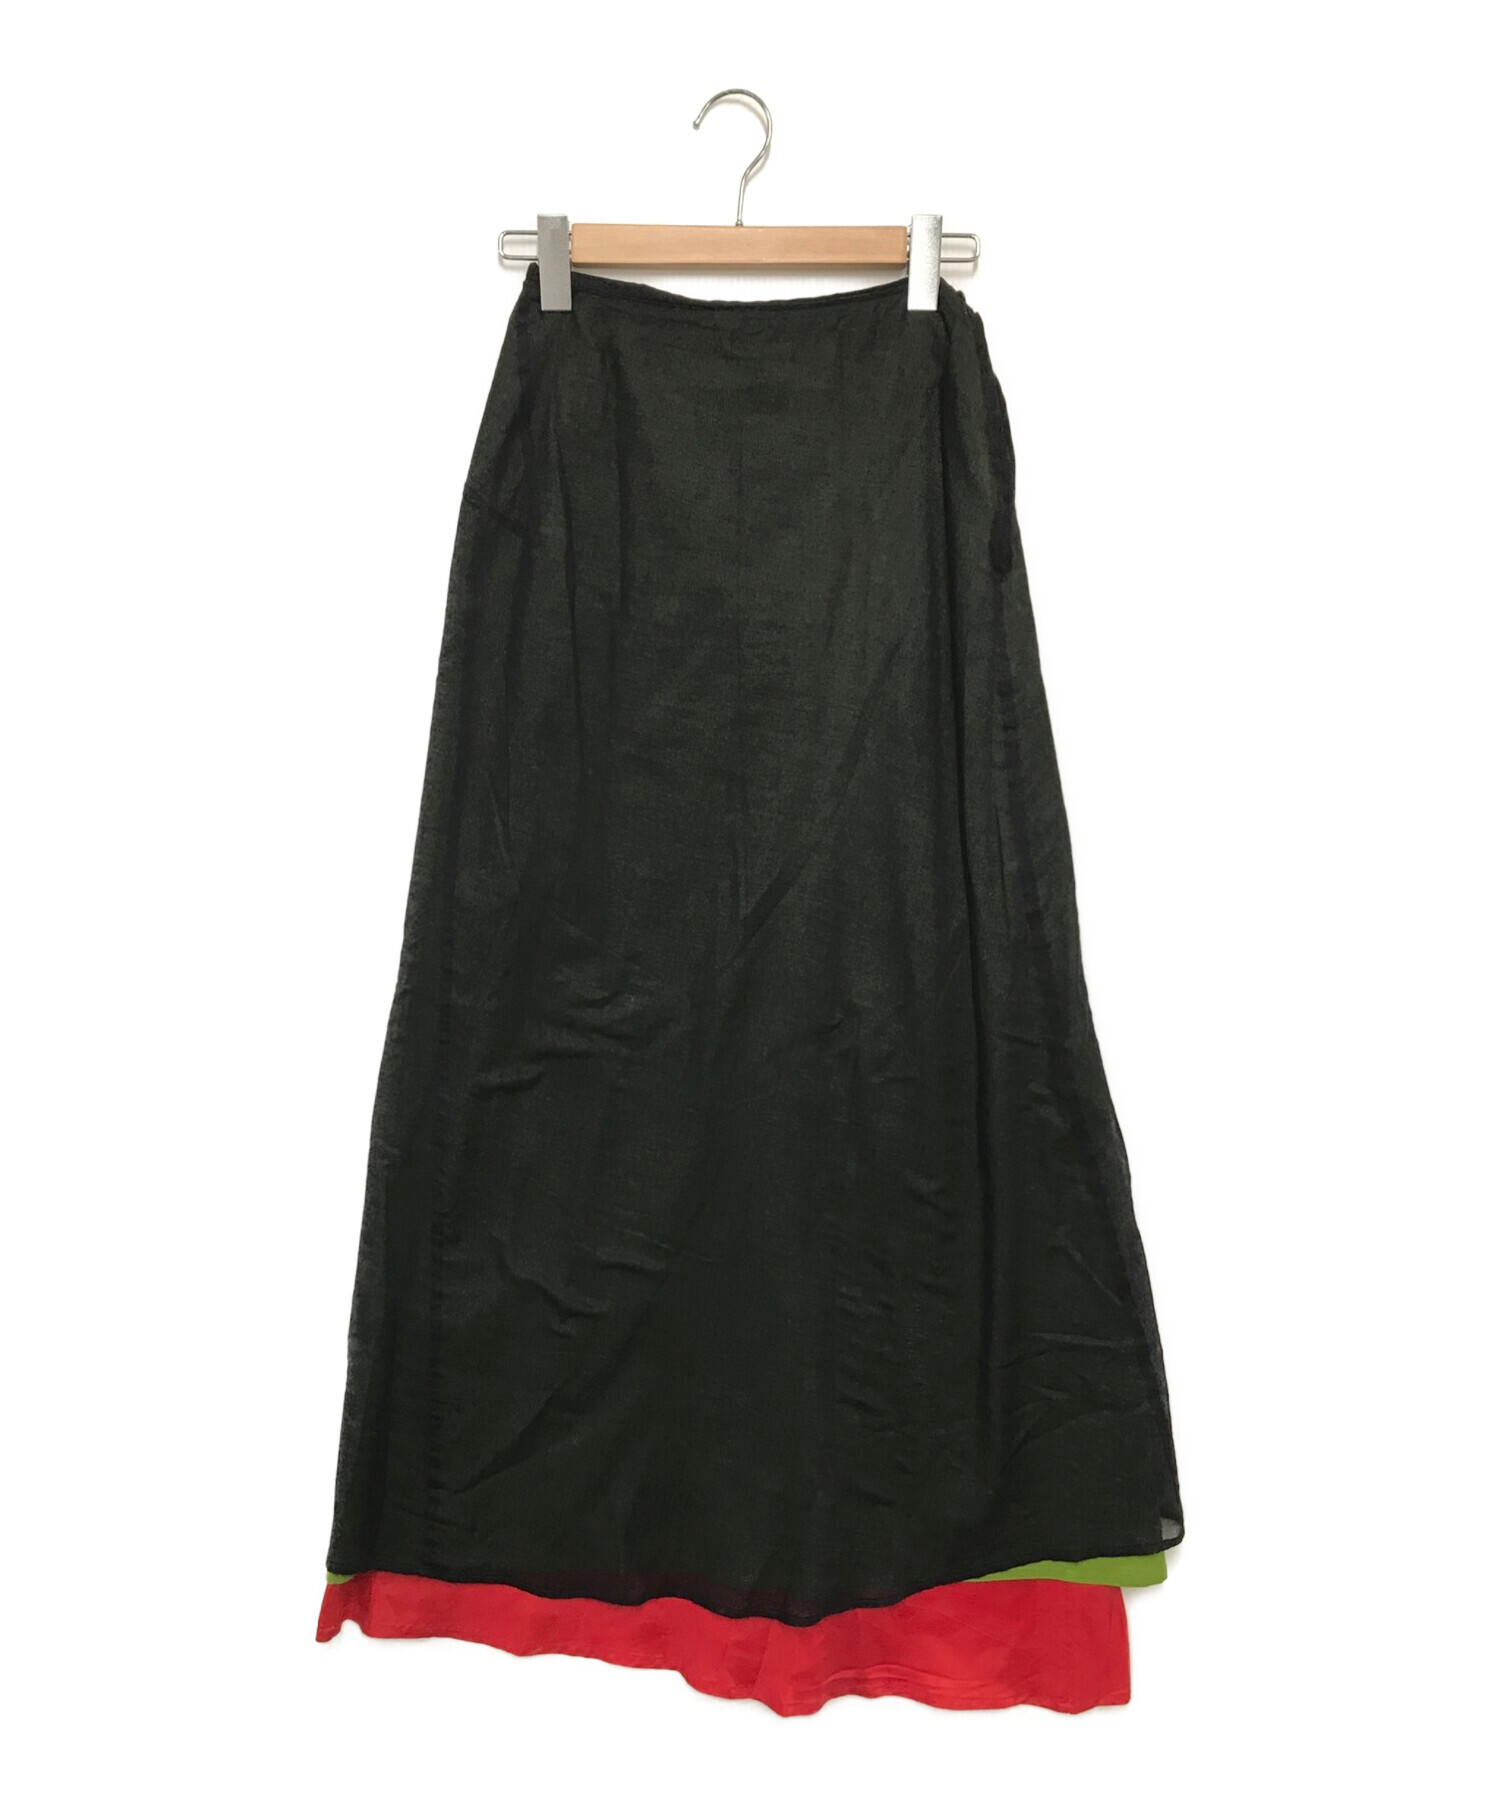 Y's (ワイズ) レイヤードスカート グリーン サイズ:S